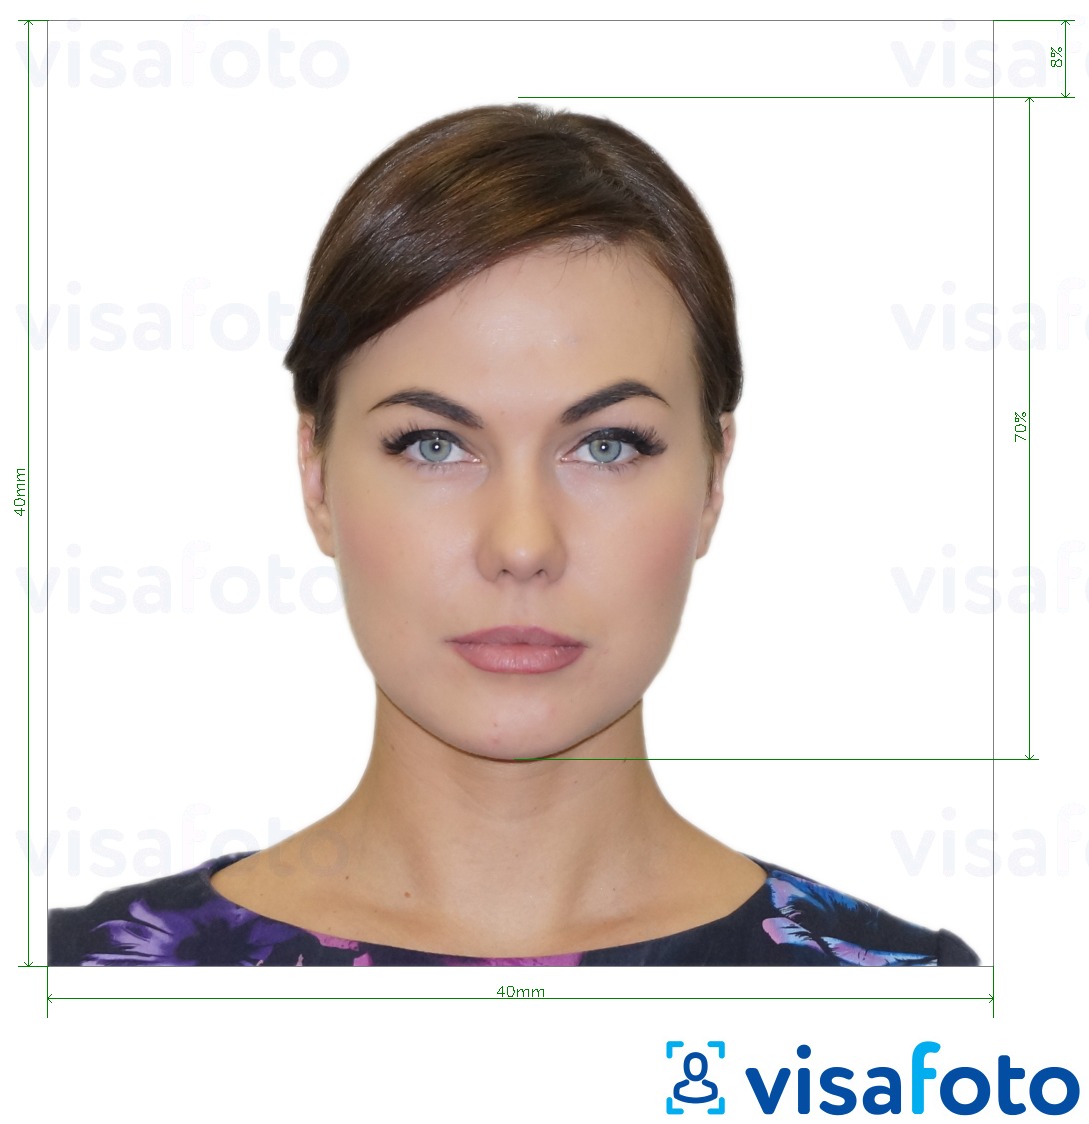 Exemple de foto per a Visa d'Argentina 4x4 cm (40x40 mm) amb la mida exacta especificada